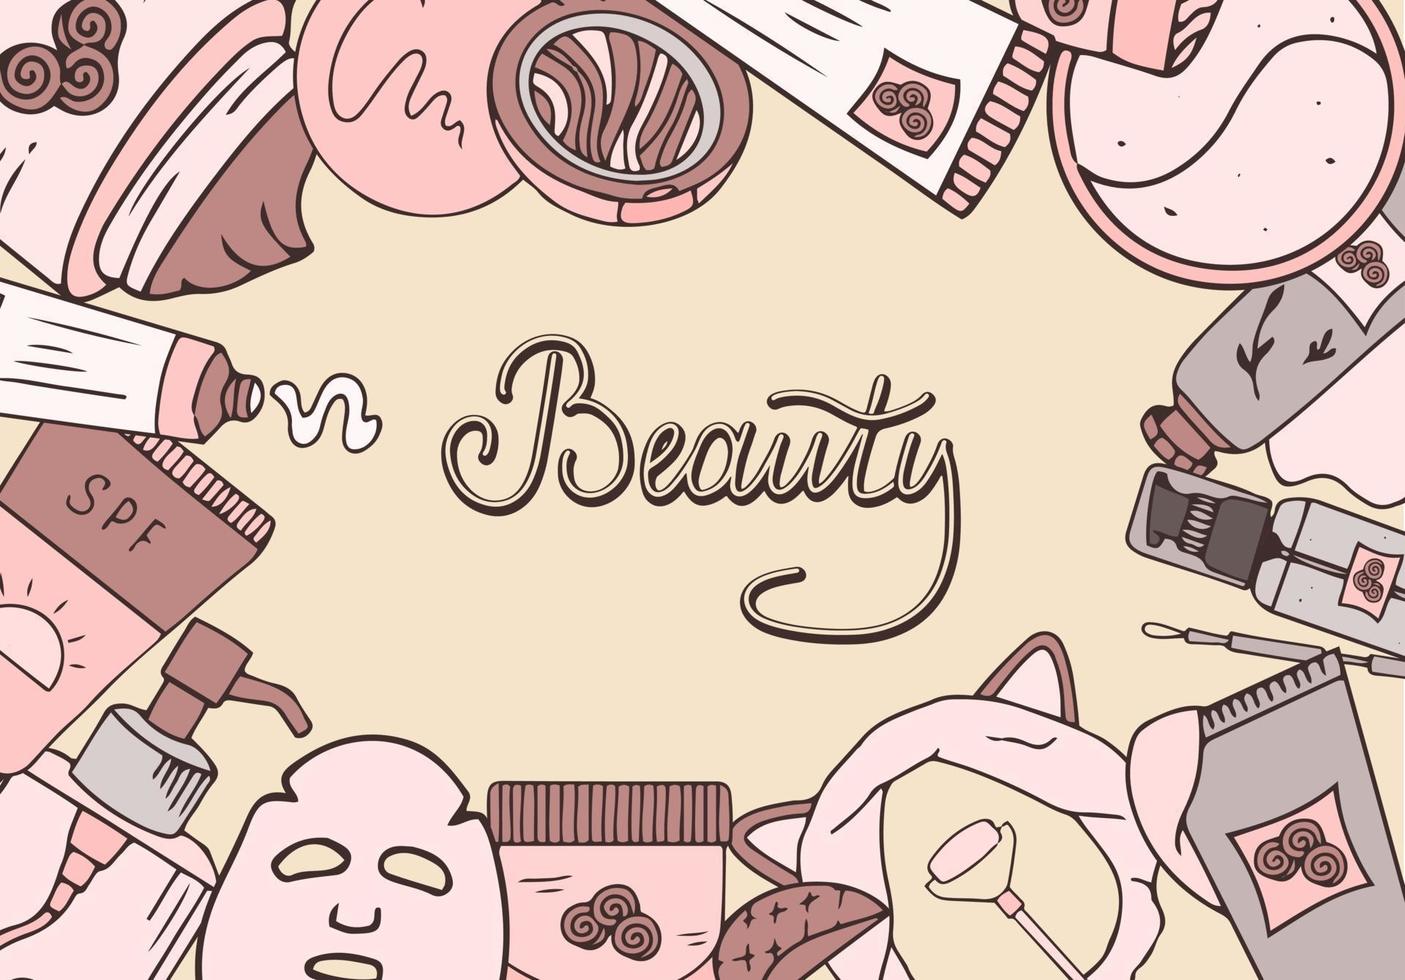 banner de belleza cosmética. colección style.vector dibujado a mano con la imagen de productos cosméticos y letras. Cosmética coreana. vector